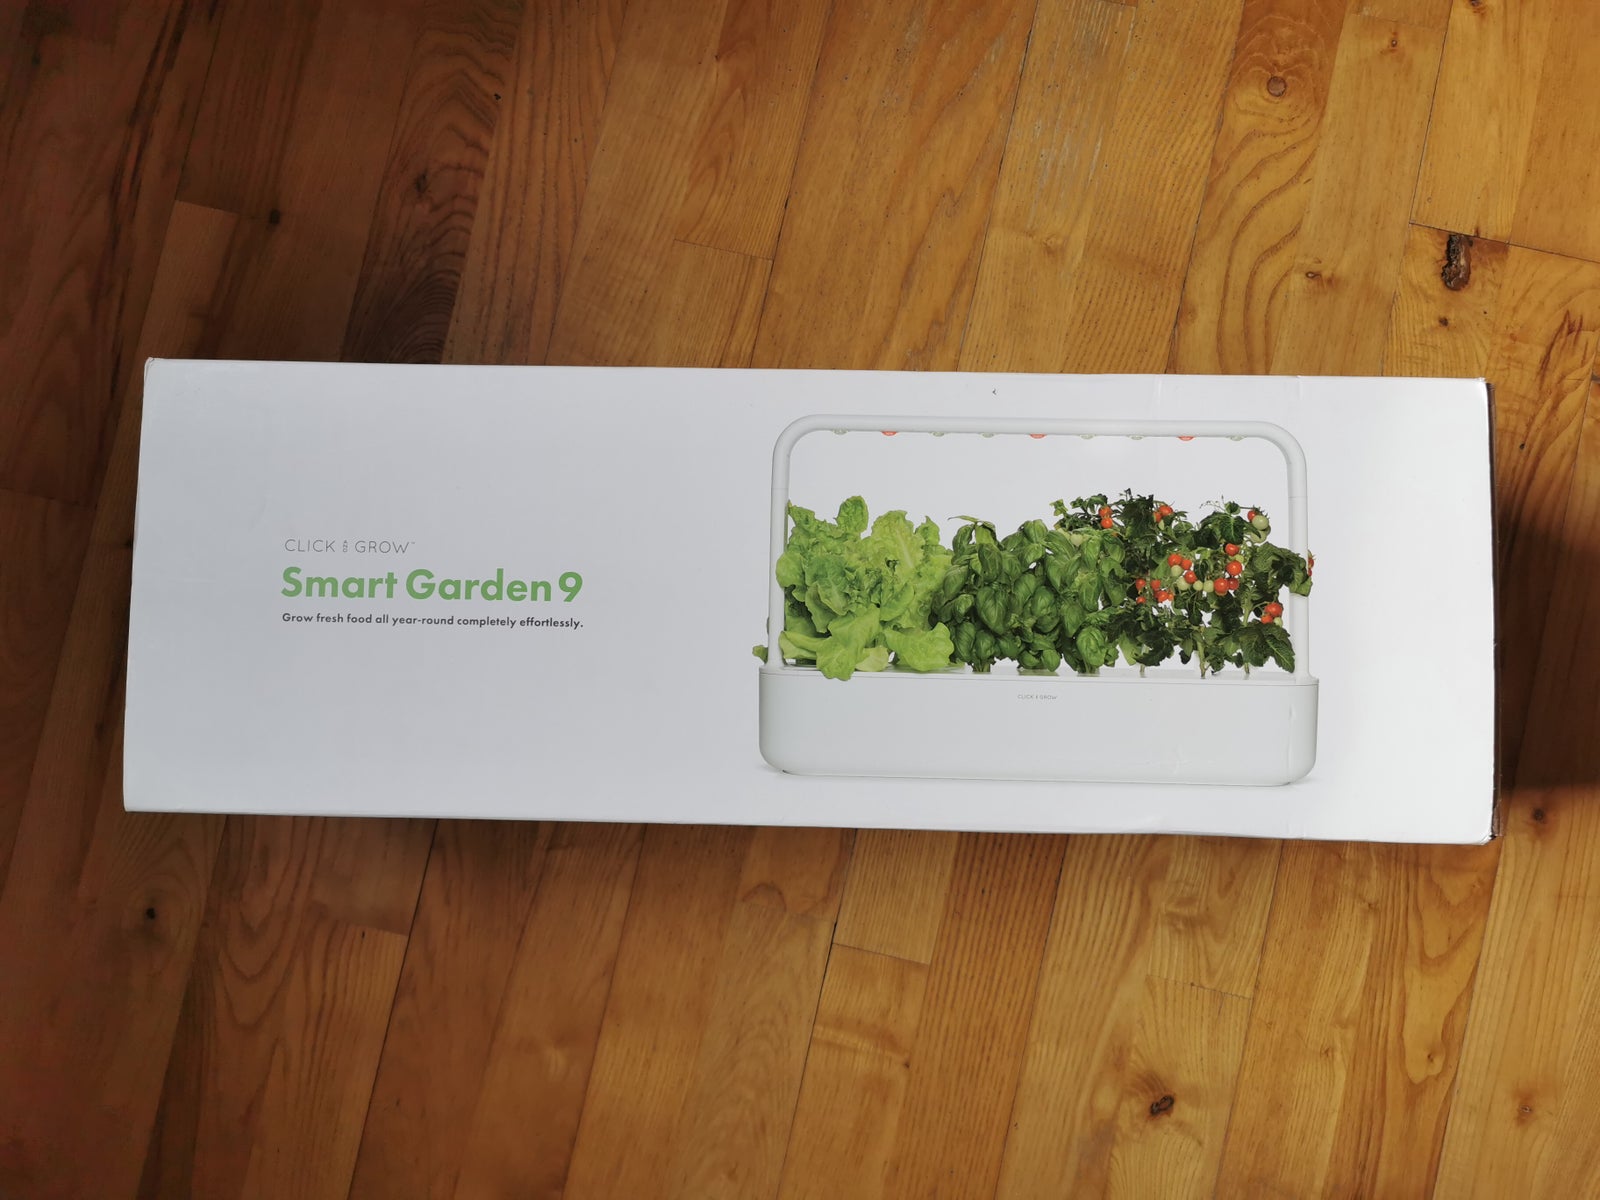 Smart Garden 9